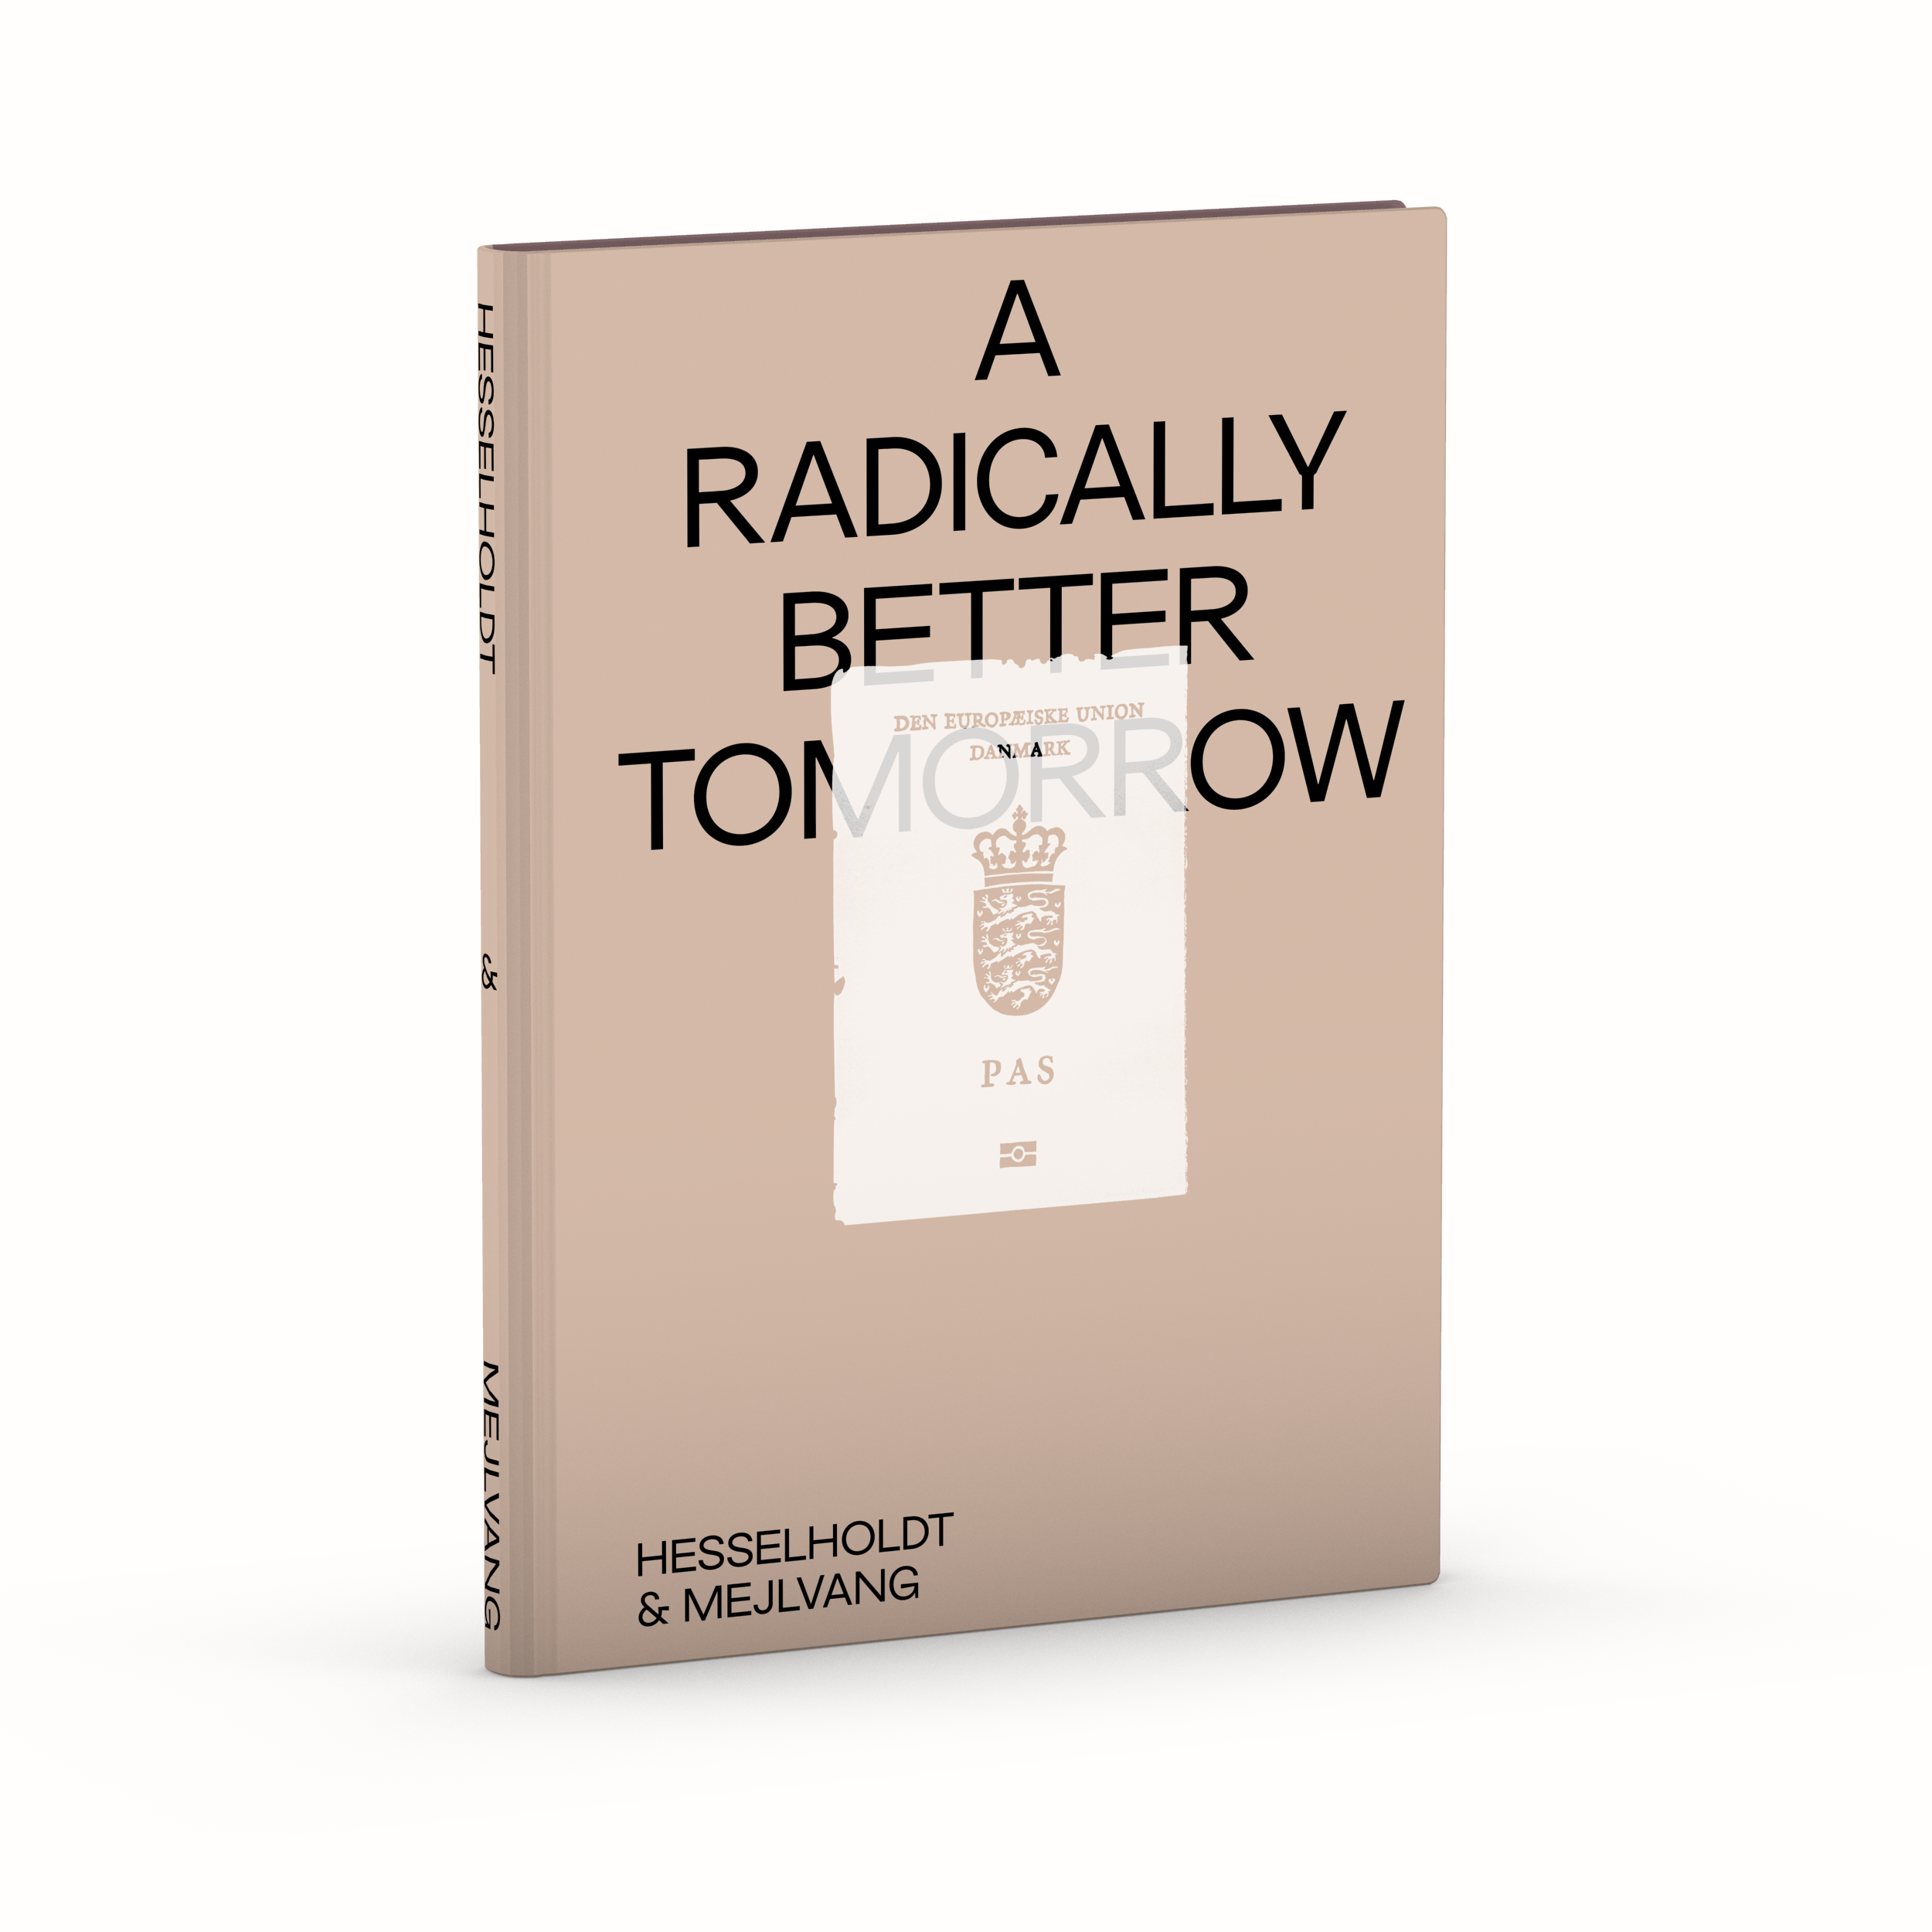 A Radically Better Tomorrow: данський творчий дует Hesselholdt & Mejlvang видав книгу, до якої увійшов перший український арт-проект